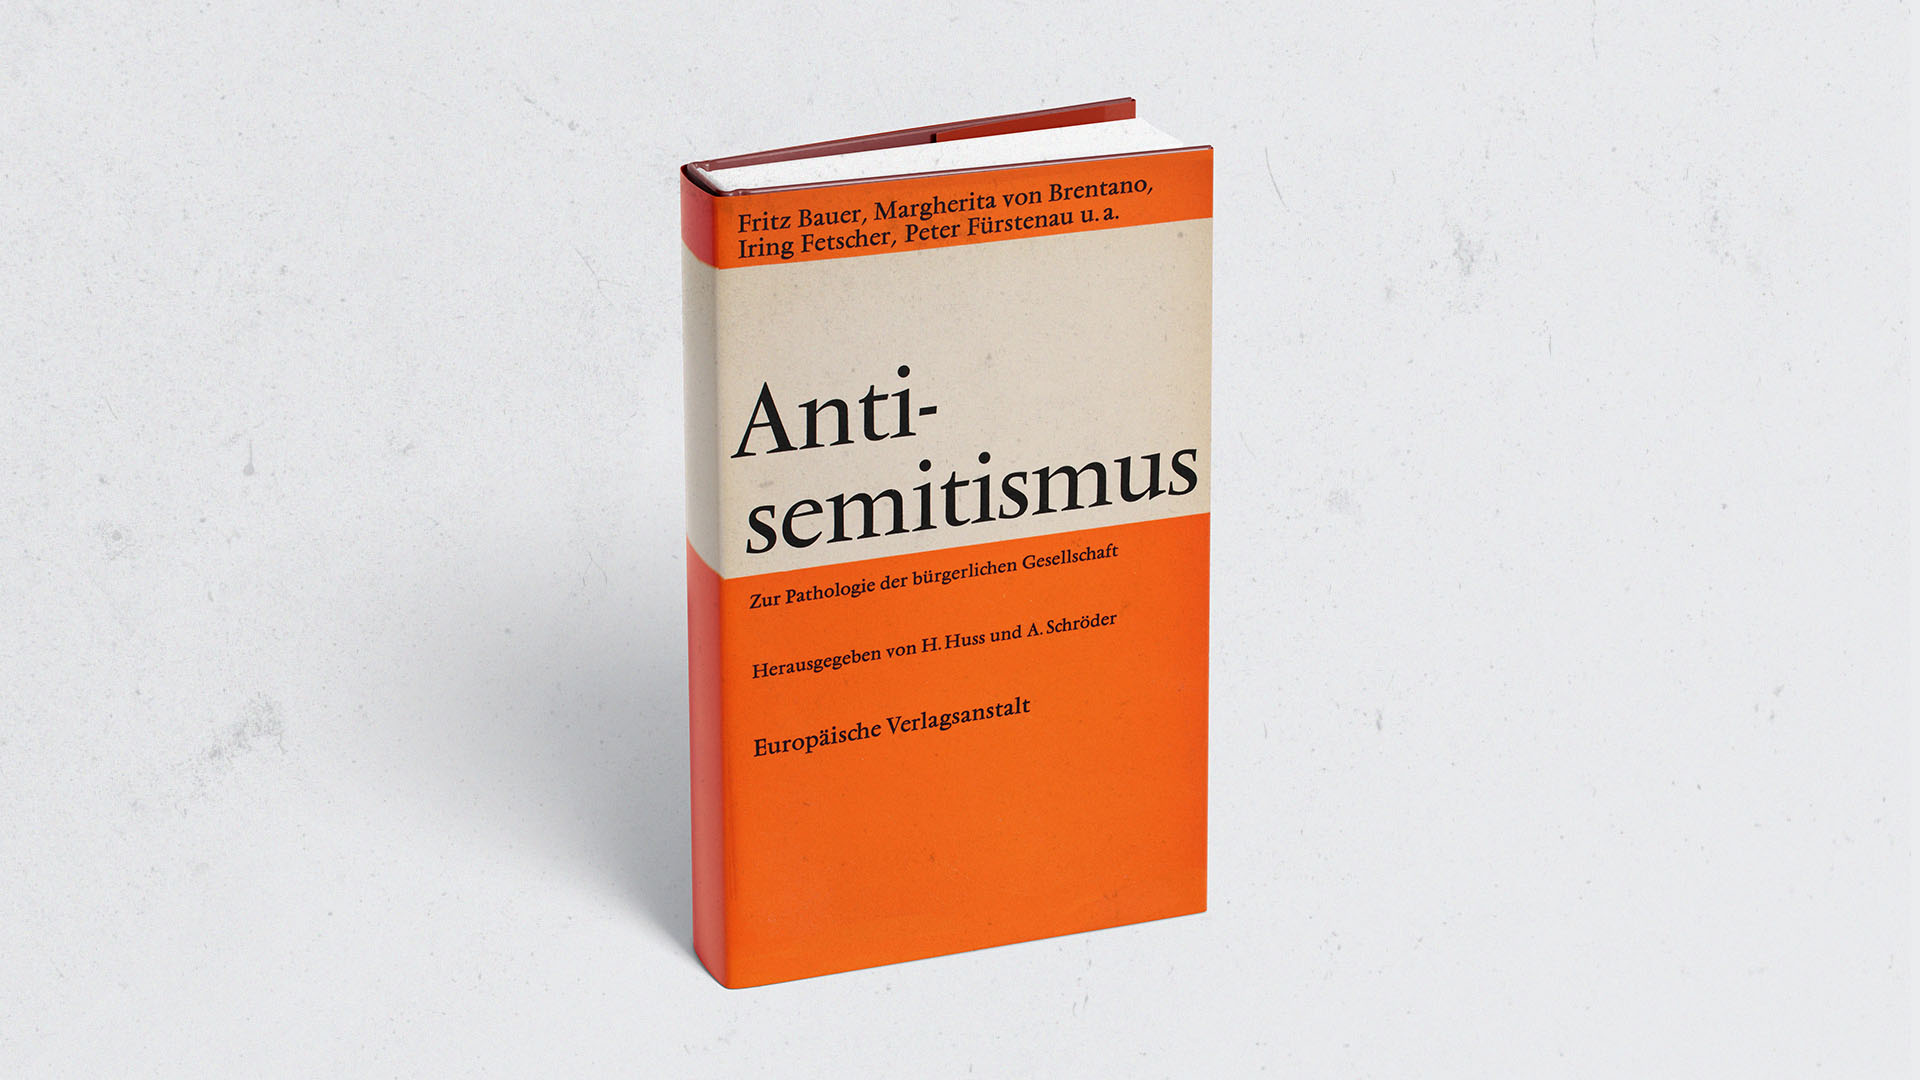 Fritz Bauer's Schriften Antisemitismus